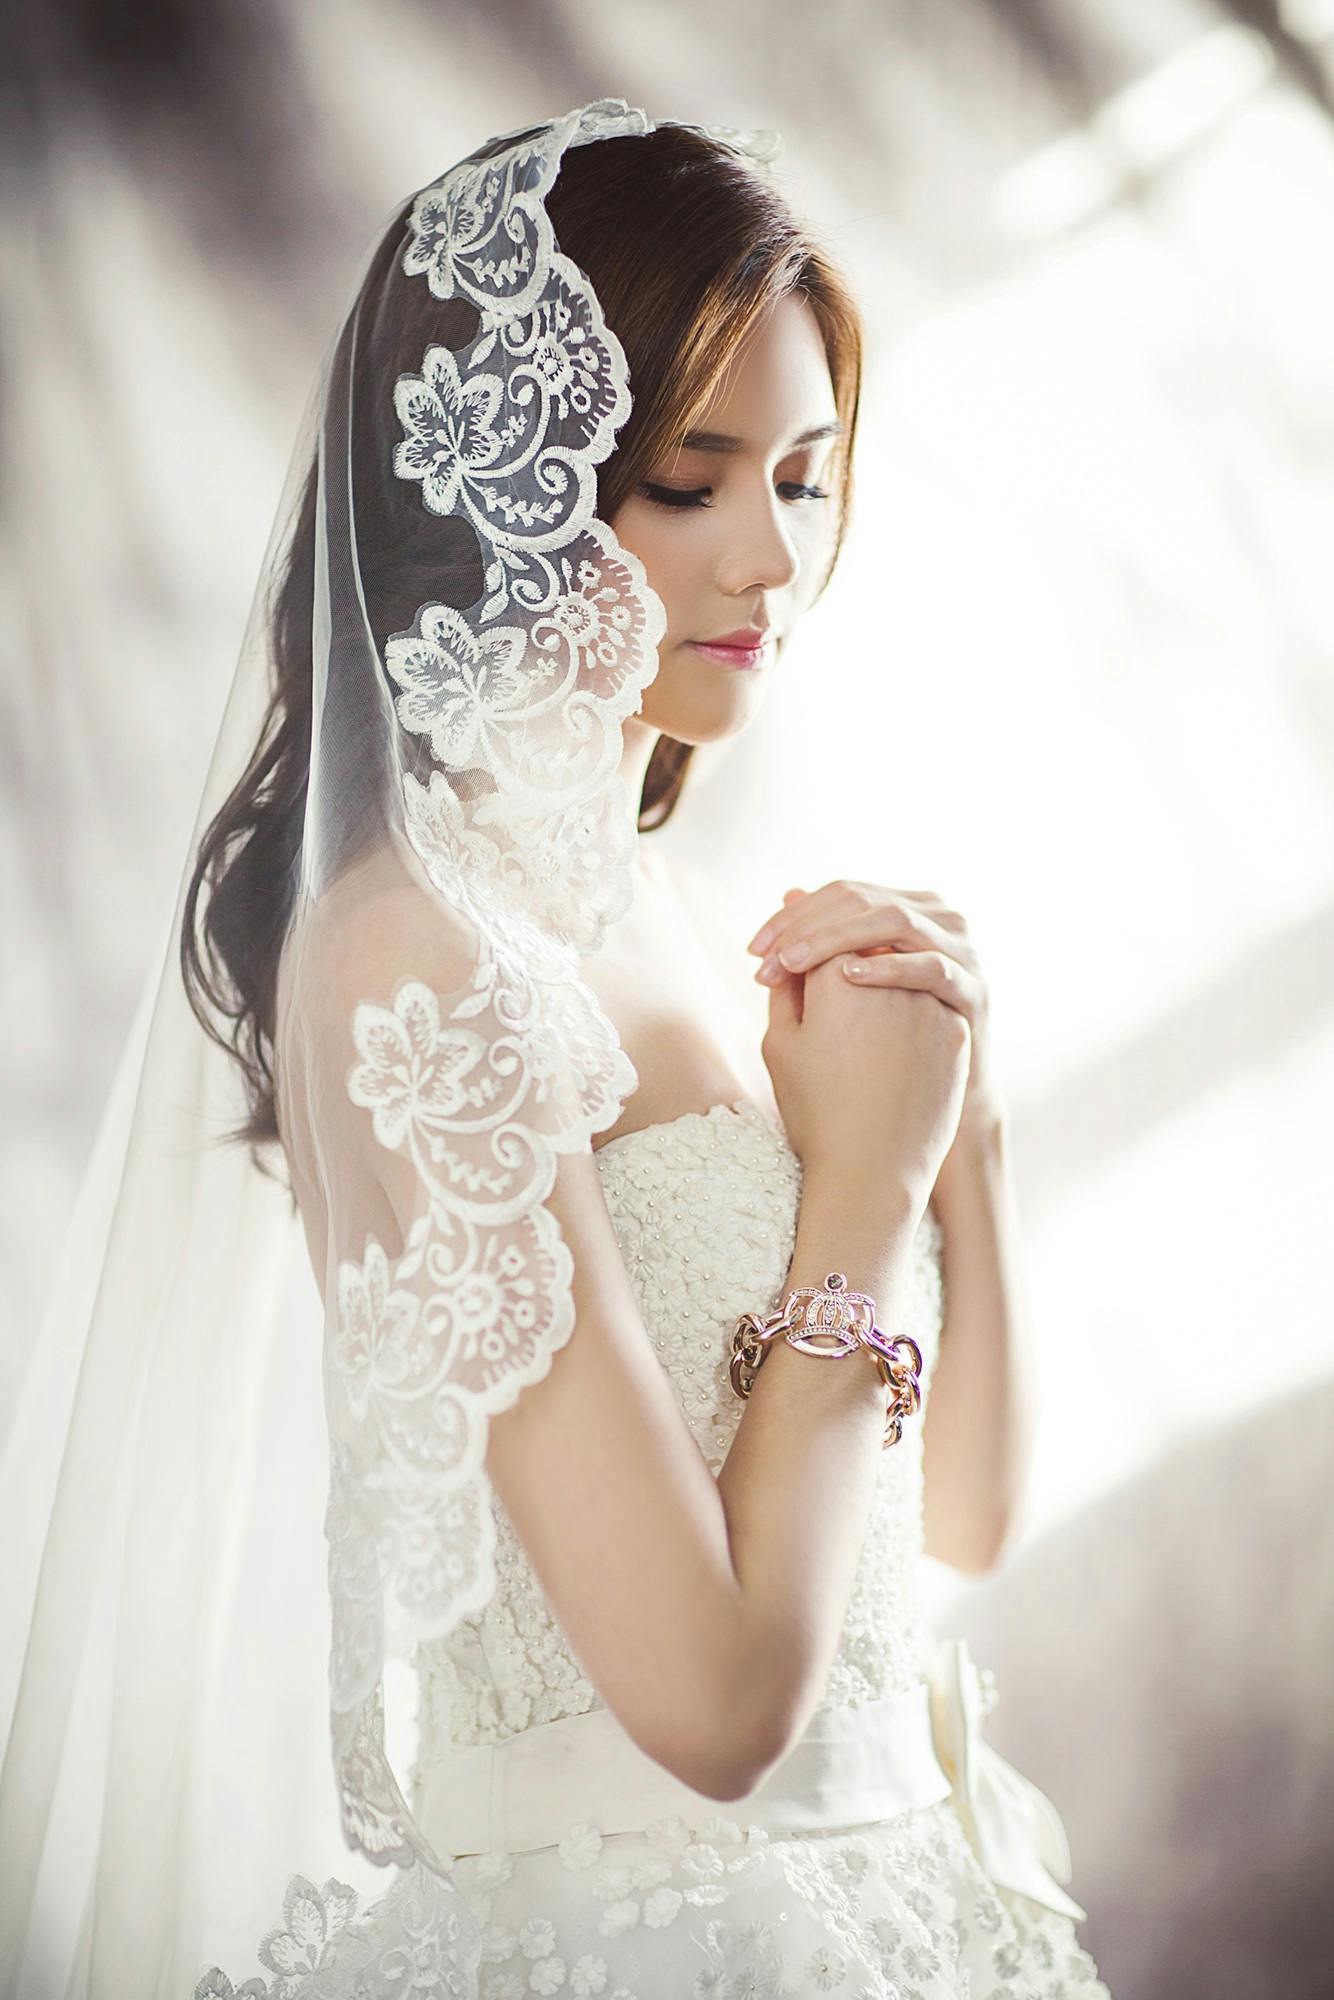 Eine Braut, die ihre Hände zusammenhält | Quelle: Pexels